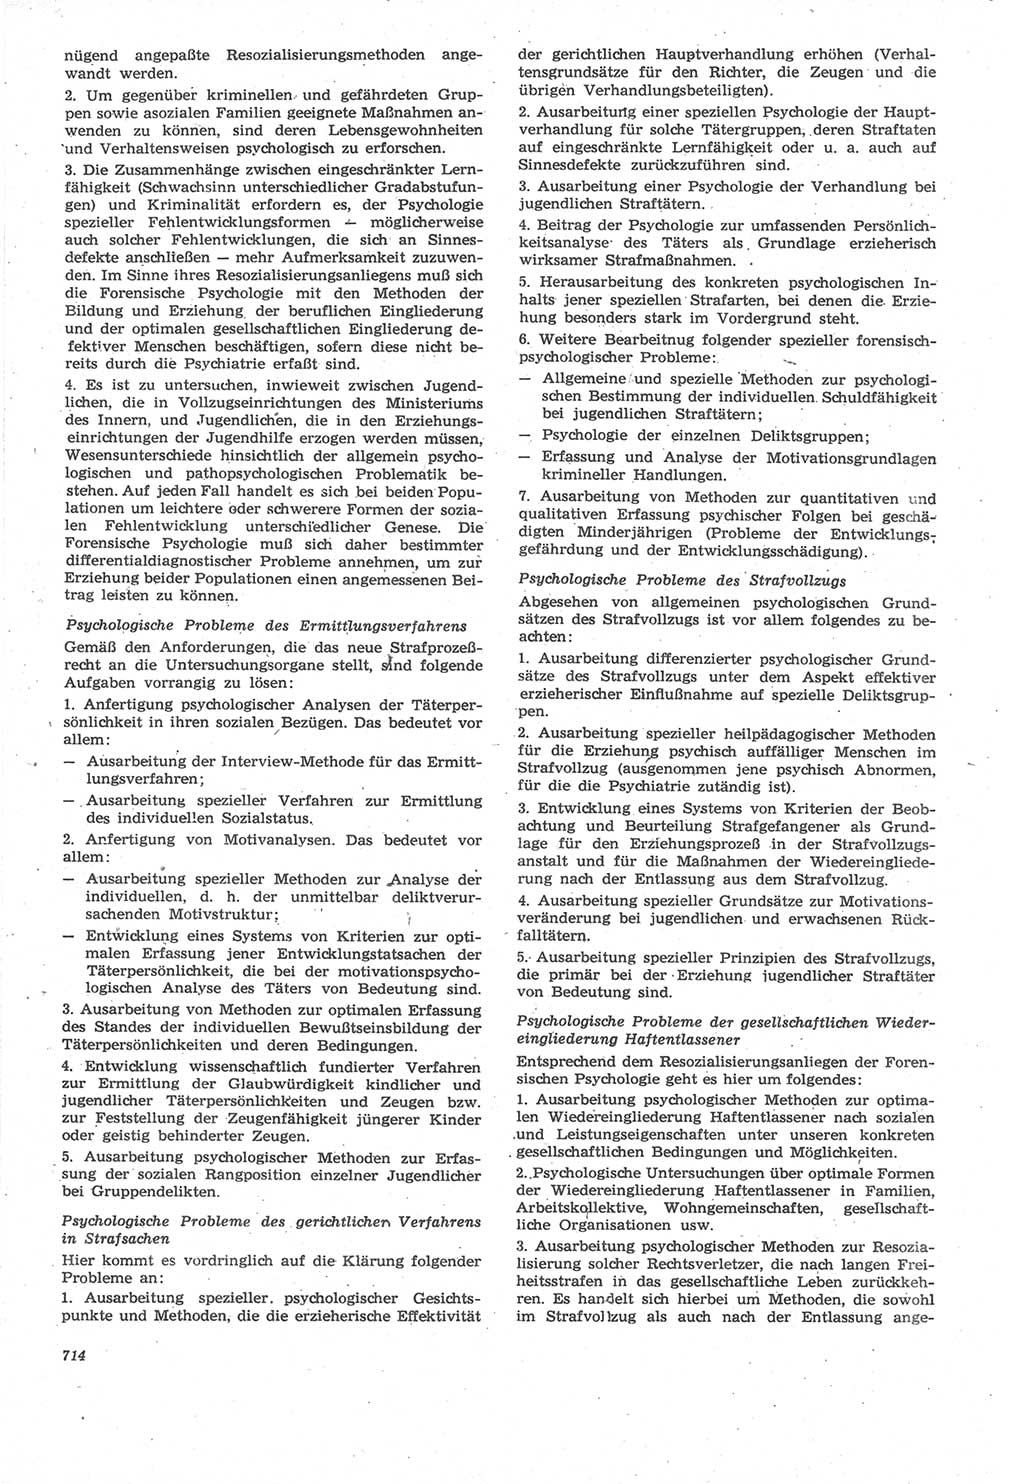 Neue Justiz (NJ), Zeitschrift für Recht und Rechtswissenschaft [Deutsche Demokratische Republik (DDR)], 22. Jahrgang 1968, Seite 714 (NJ DDR 1968, S. 714)